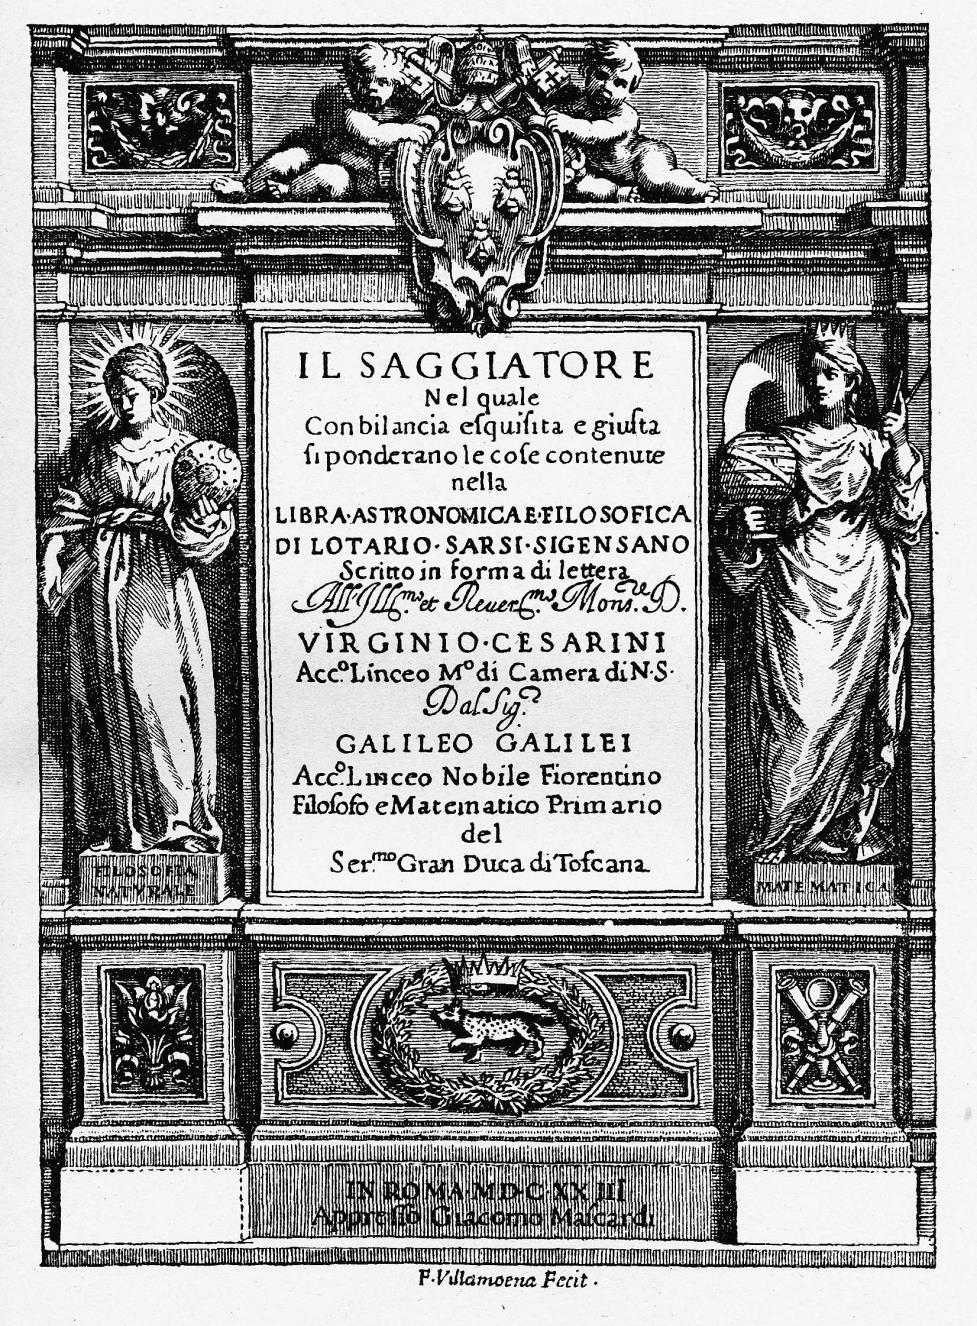 Cinco anos depois, em 1623, com 59 anos, publica Il Saggiatore (O Ensaiador), onde emite suas opiniões filosóficas sobre a matéria, o que inclui uma discussão